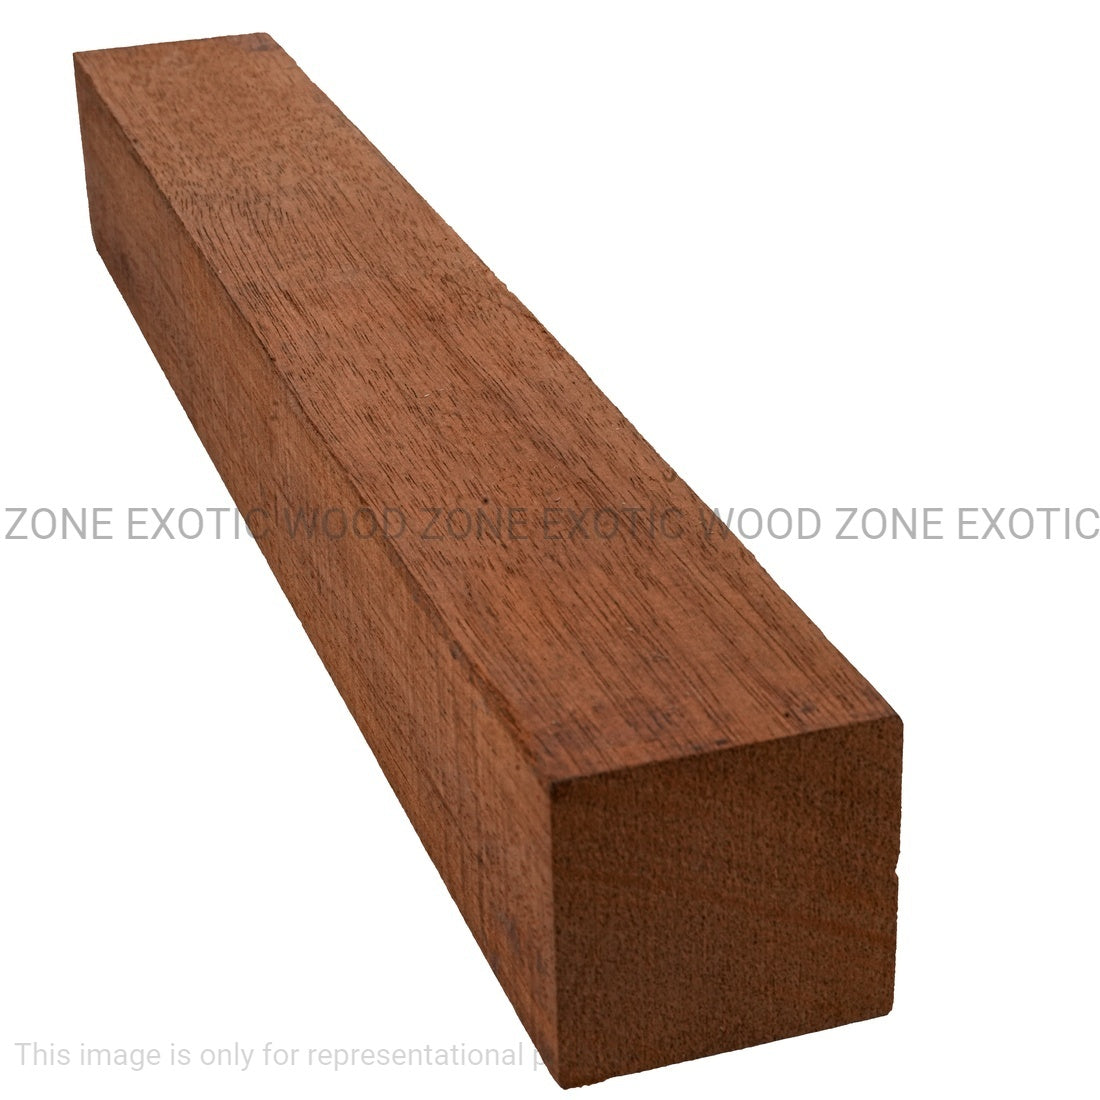 Combo Pack 5, Genuine Honduran Mahogany Turning Blanks 12” x 1” x 1” - Exotic Wood Zone - Buy online Across USA 